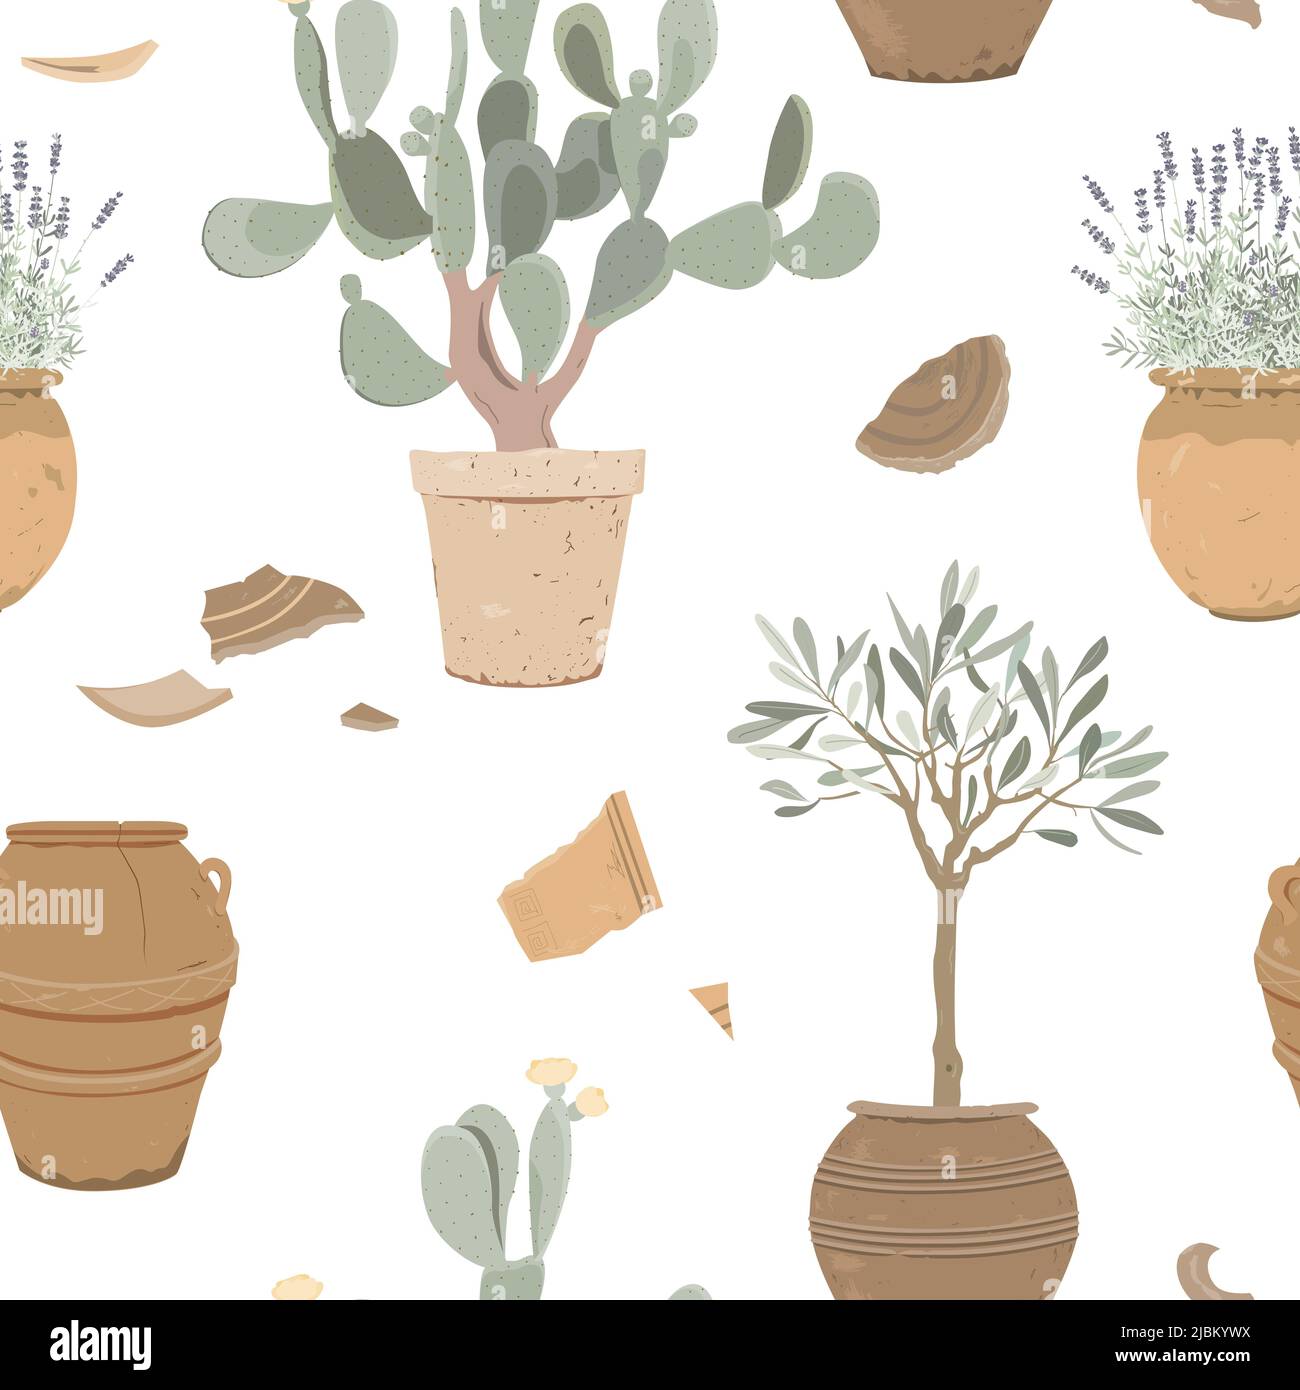 Topfpflanzen und mediterrane Pflanzen in alten Töpfen, nahtloses Muster. Lavendel, Kaktusbirne und Olivenbaum in Tontöpfen. Vektorgrafik. Stock Vektor